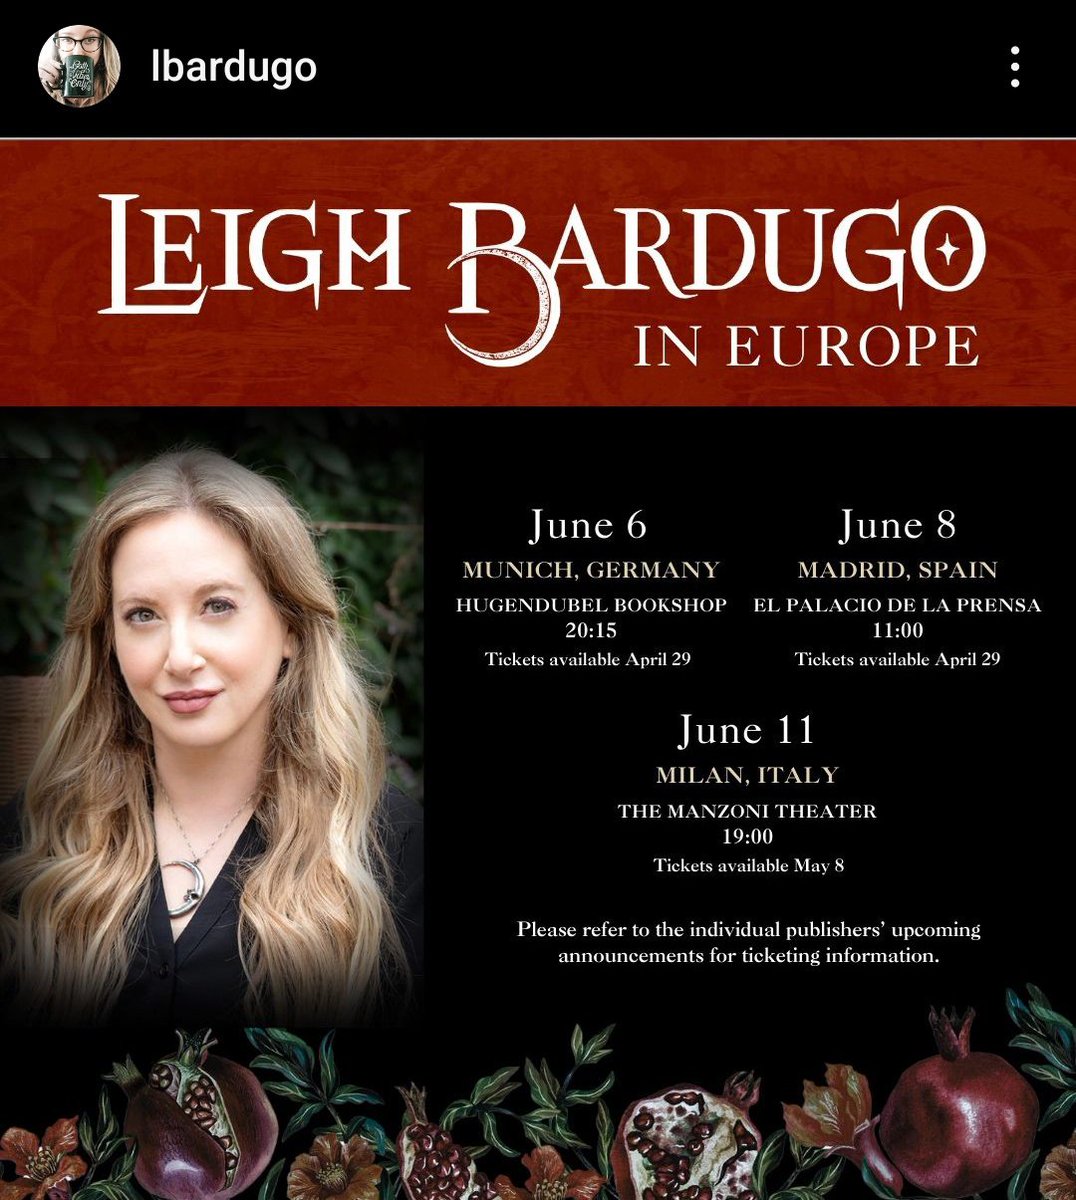 #LeighBardugo

⚠️ATENCIÓN⚠️

La autora del #Grishaverso y #ElFamiliar viene a MADRID el próximo 8 de junio.

La firma será con tickets que salen el 29 de ABRIL con @EdHidra.